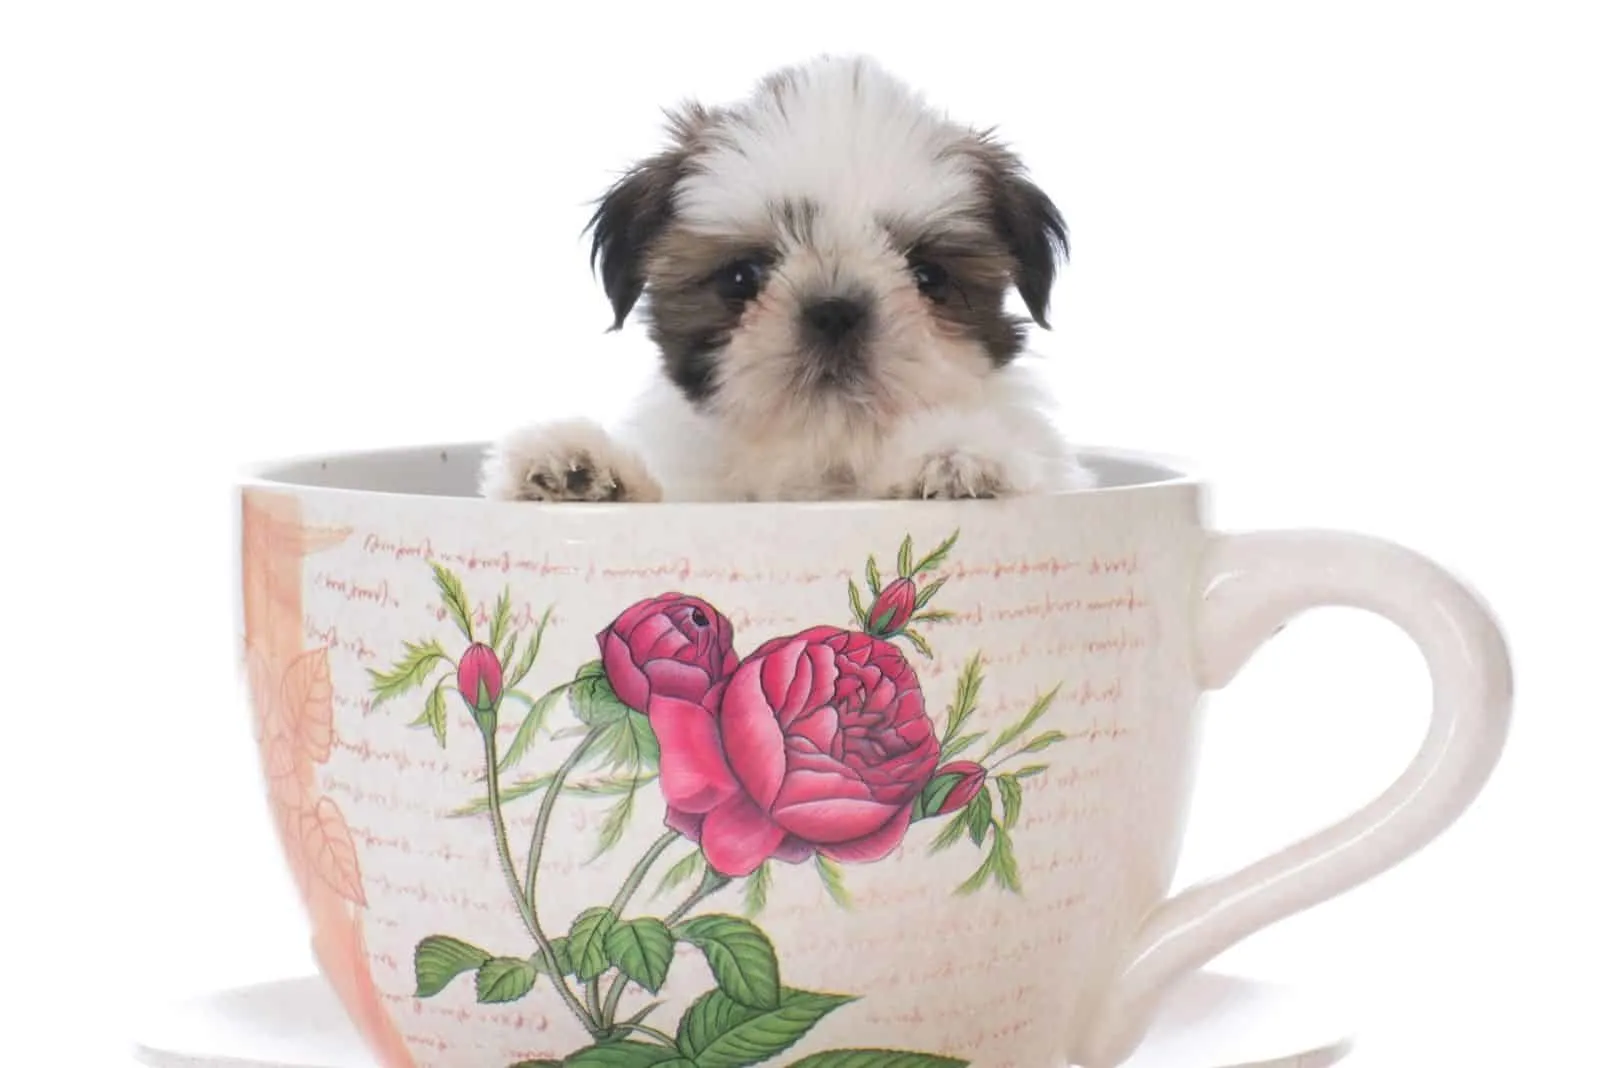 adorable shih tzu puppy inside a big tea cup